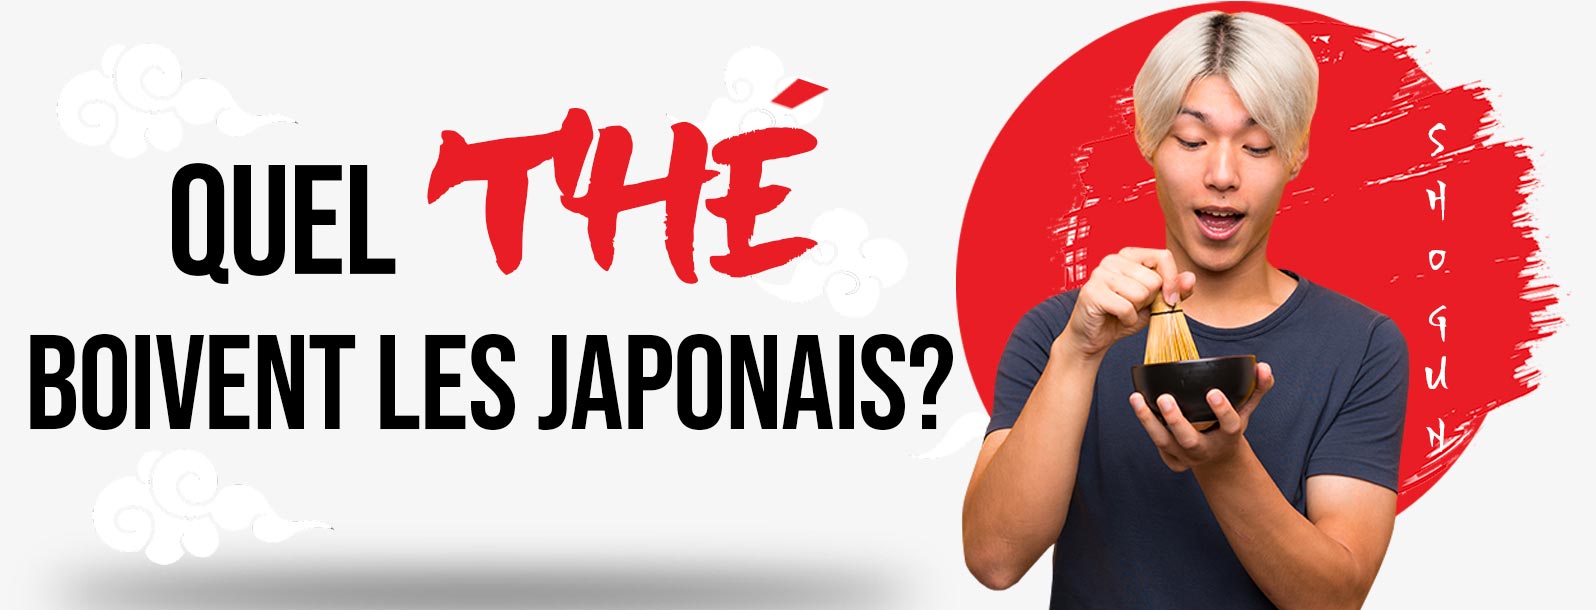 Quel thé boivent les Japonais ?